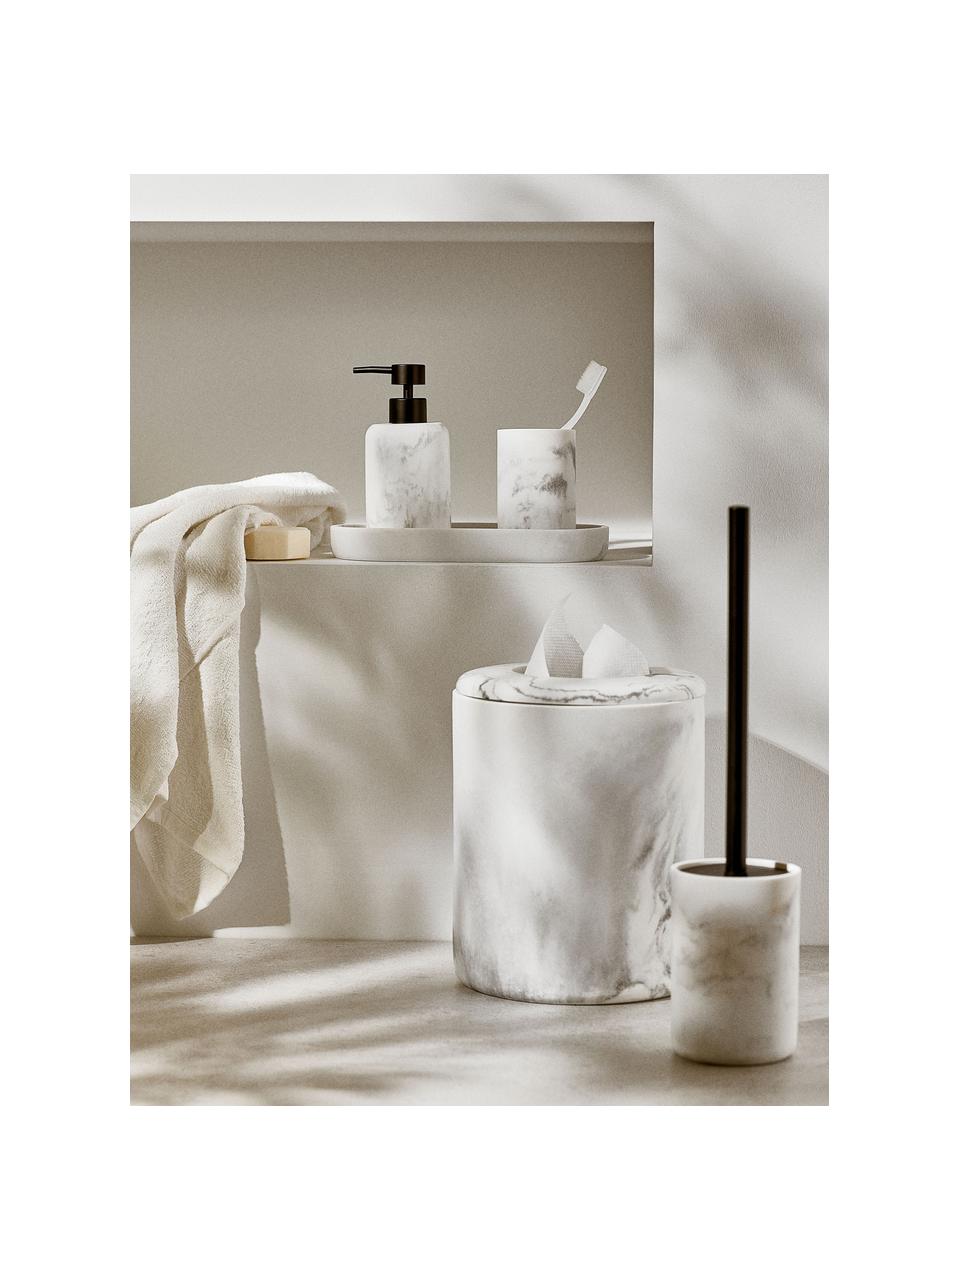 WC kartáč v mramorovém vzhledu Kyle, Bílý mramorový vzhled, Ø 10 cm, V 41 cm